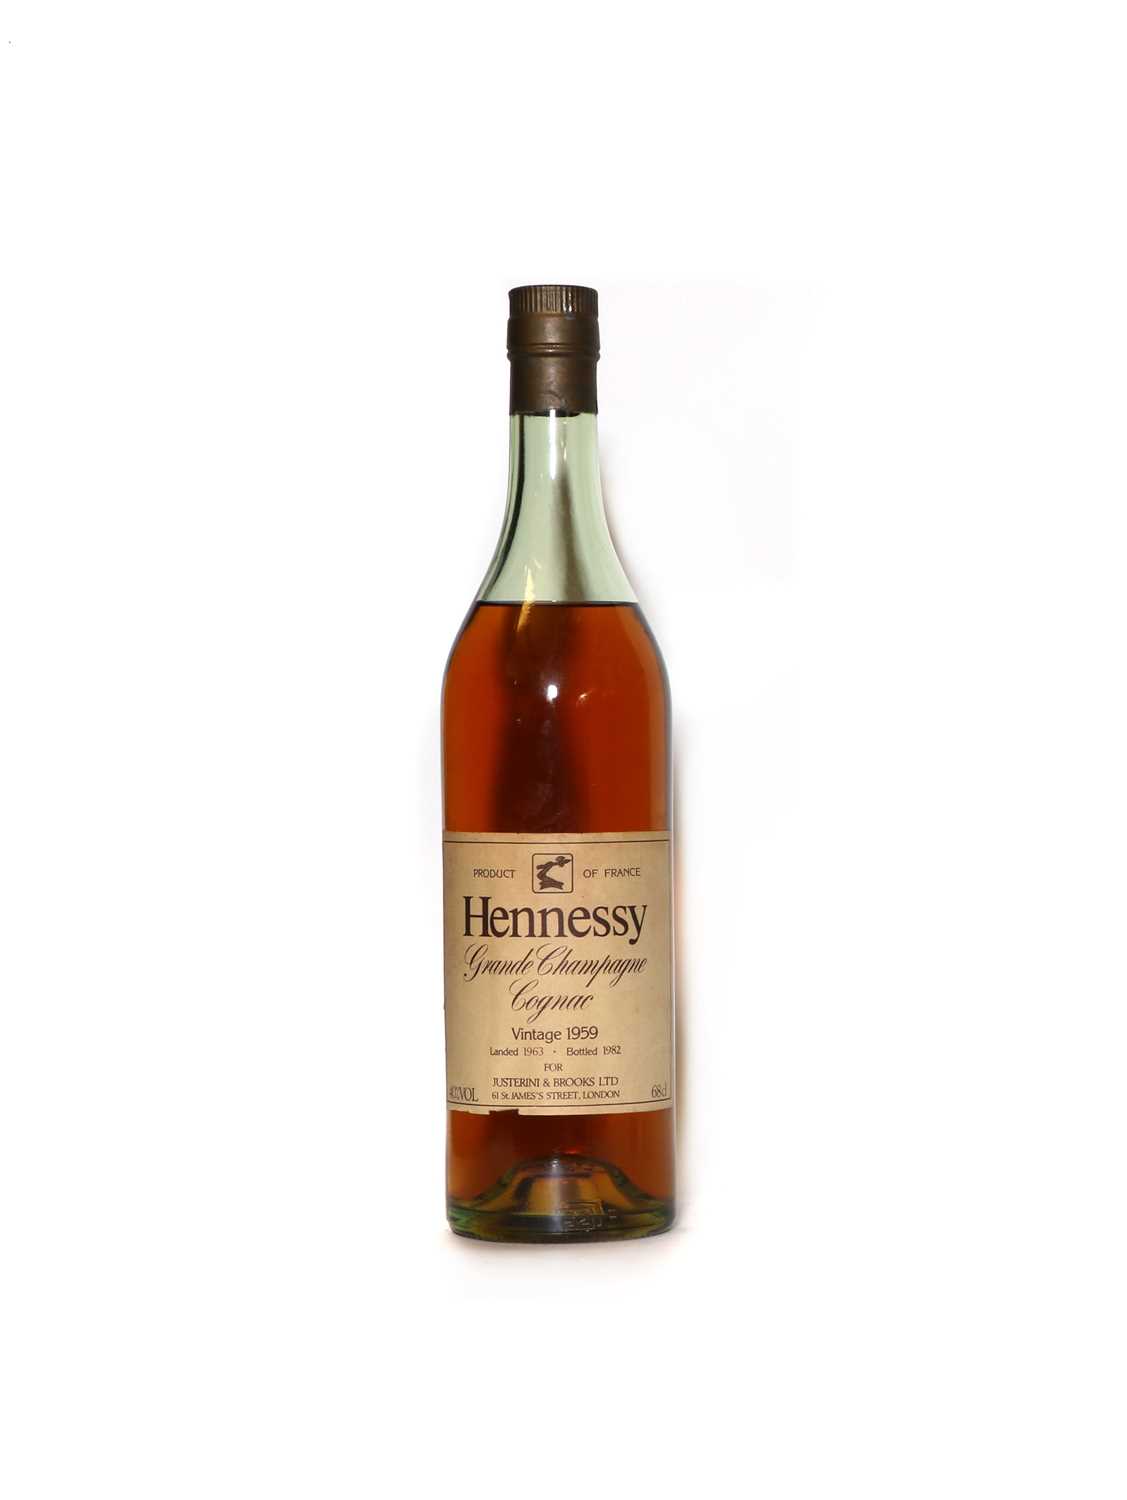 Hennessy, Grande Champagne Cognac, 1959, landed 1963, bottled 1982, 40% vol, 68cl, (1)